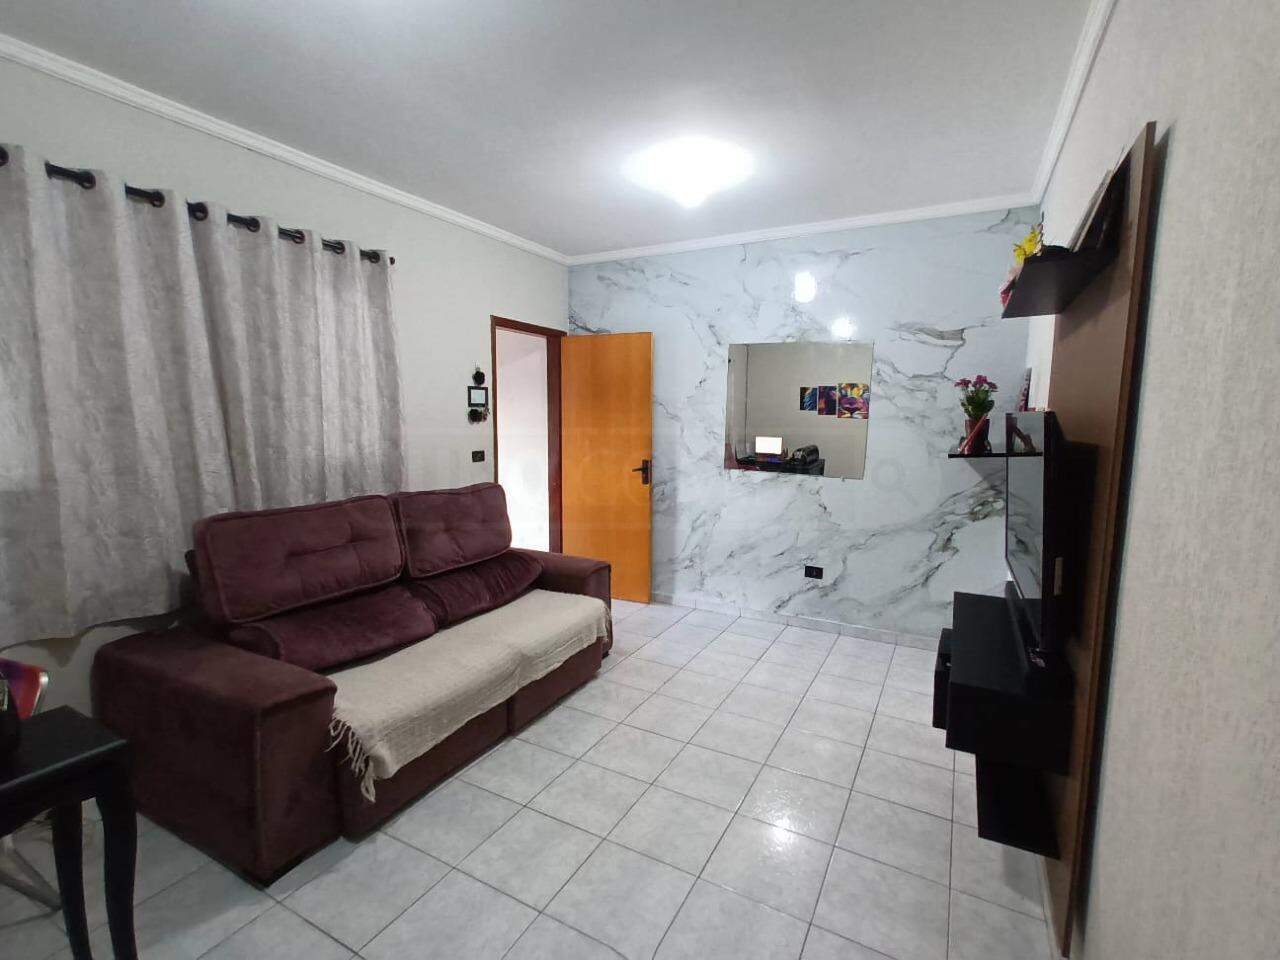 Casa à venda, 2 quartos, 2 vagas, no bairro Parque Taquaral em Piracicaba - SP